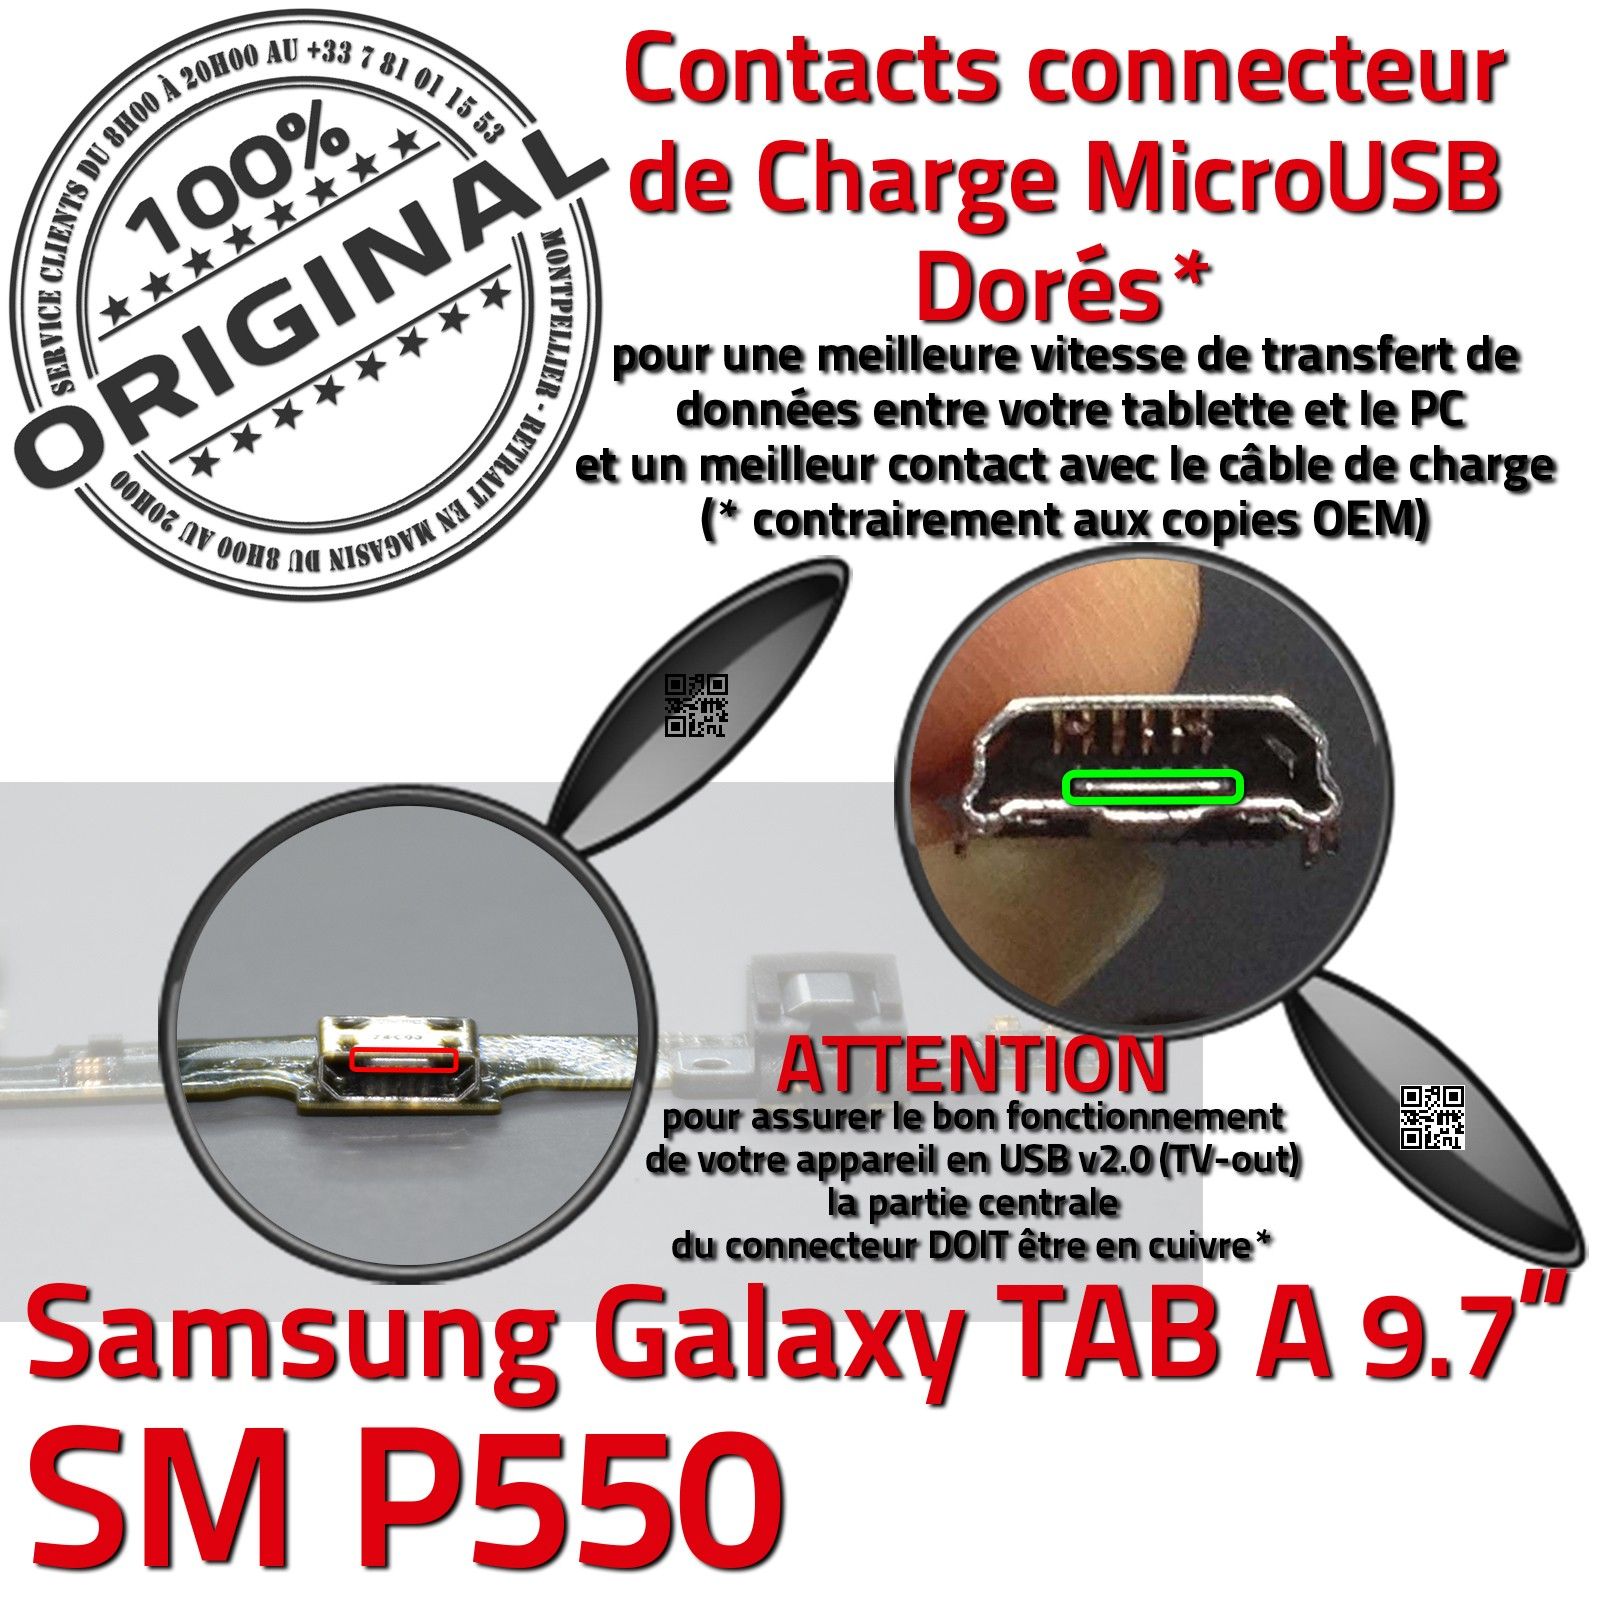 TAB A SM P550 ORIGINAL Samsung Galaxy Connecteur de Charge Chargeur  MicroUSB Nappe OFFICIELLE Qualité Contact Doré Réparation